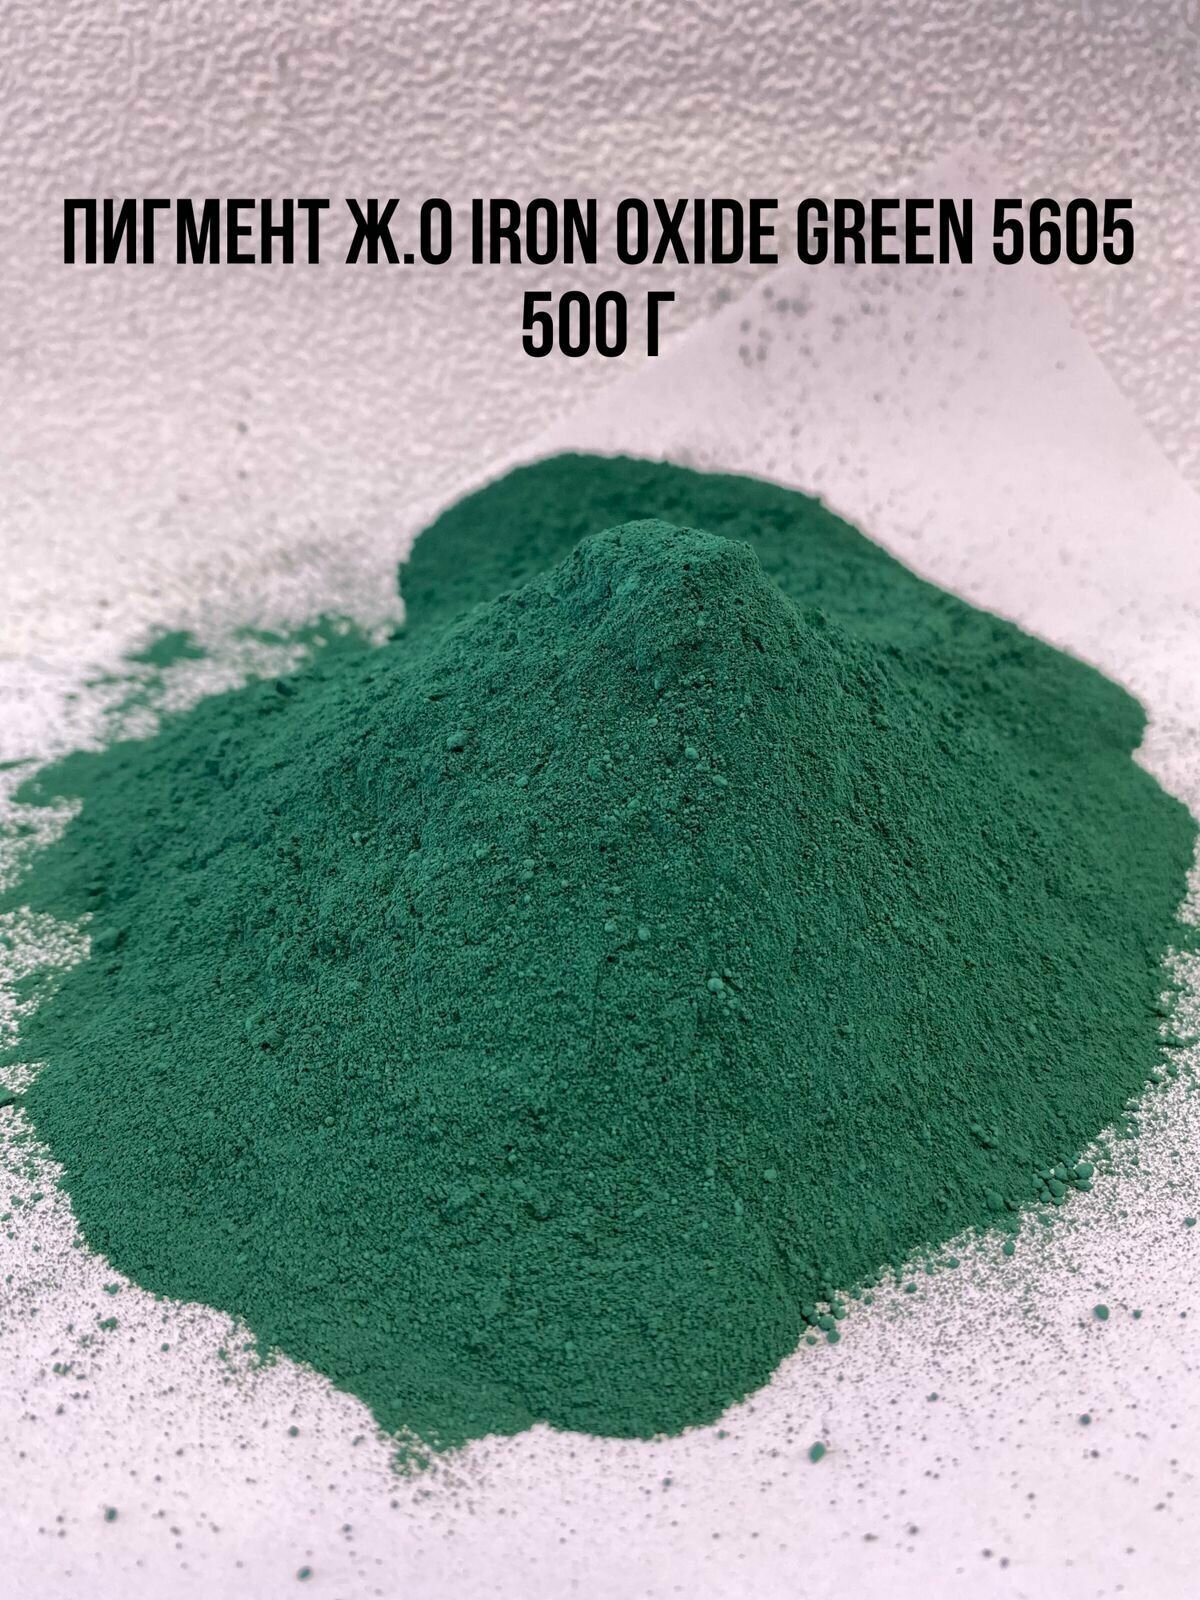 Пигмент зеленый Iron Oxide GREEN 5605 железооксидный TONGCHEM вес 500 г для бетона, гипса, добавка в раствор. Сухой колер.